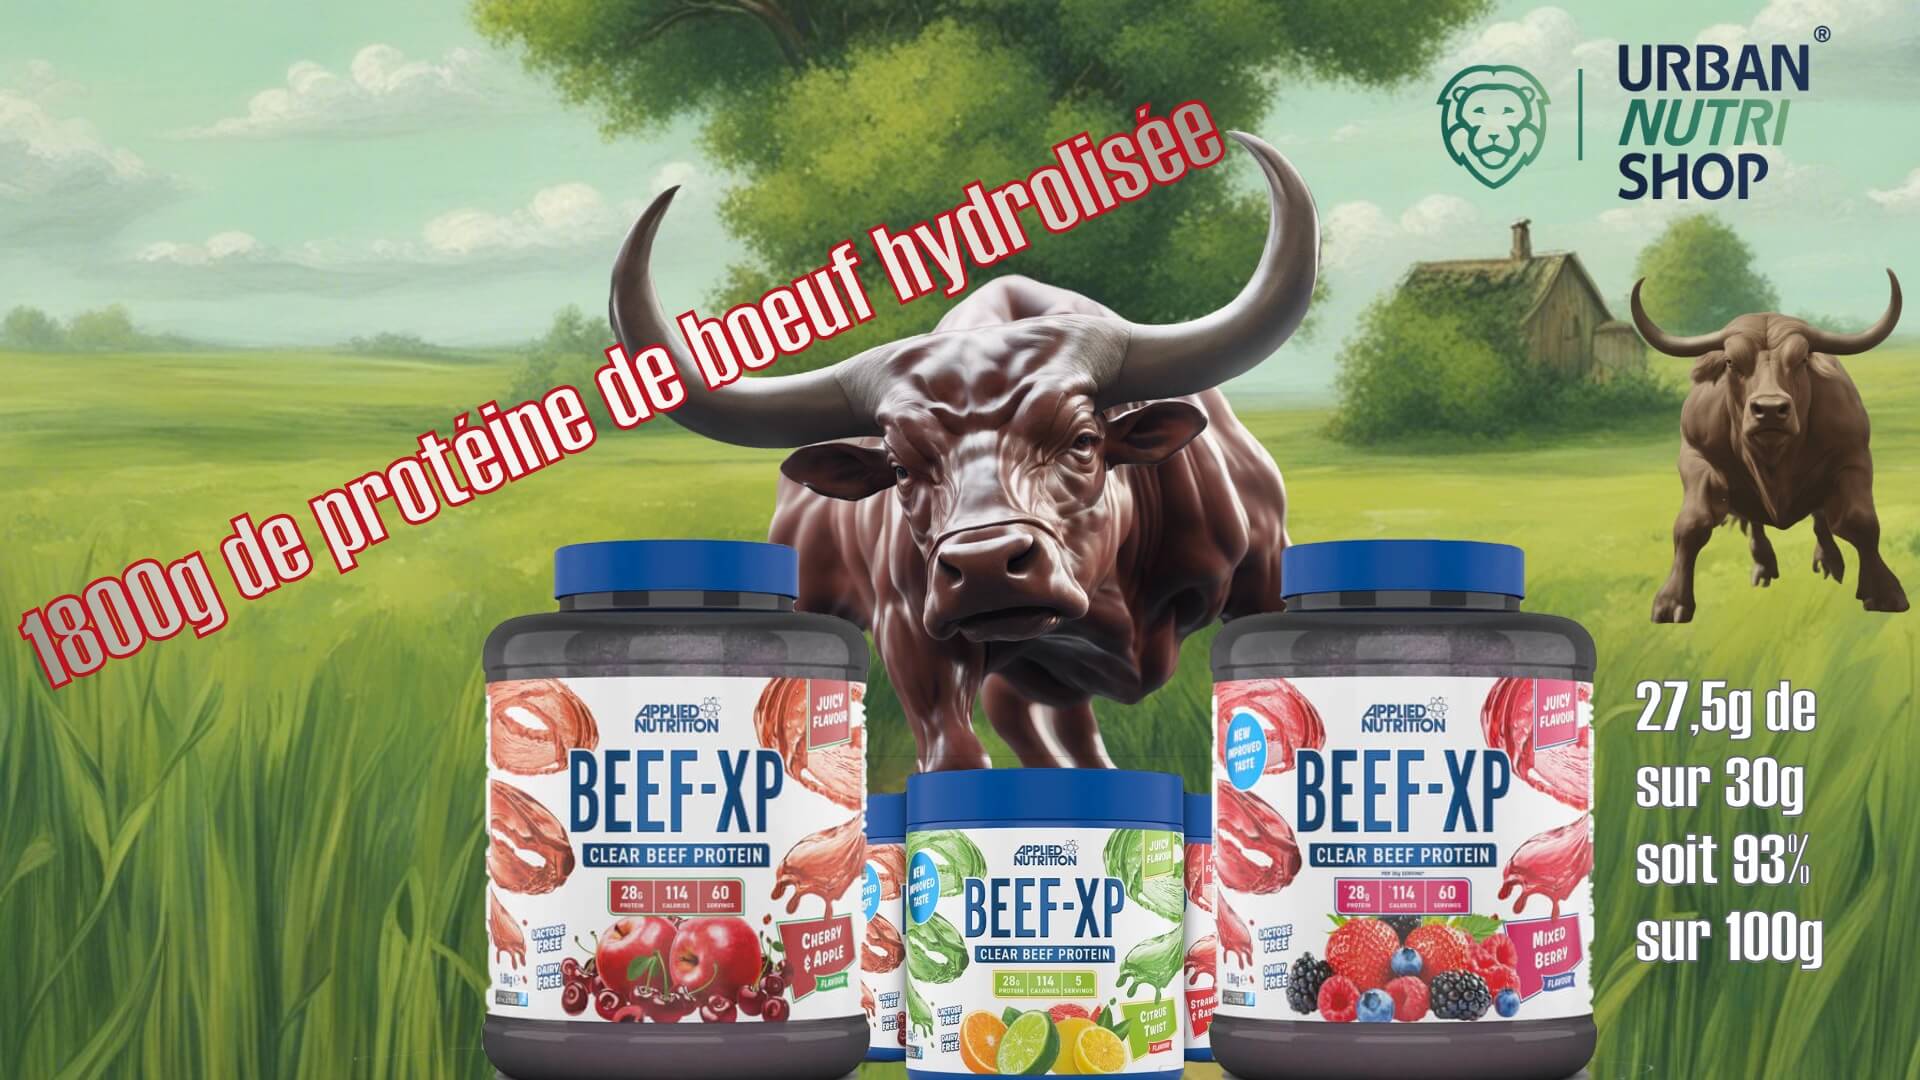 banniere de la proteine de boeuf hydrolisee beef-xp de applied nutrition